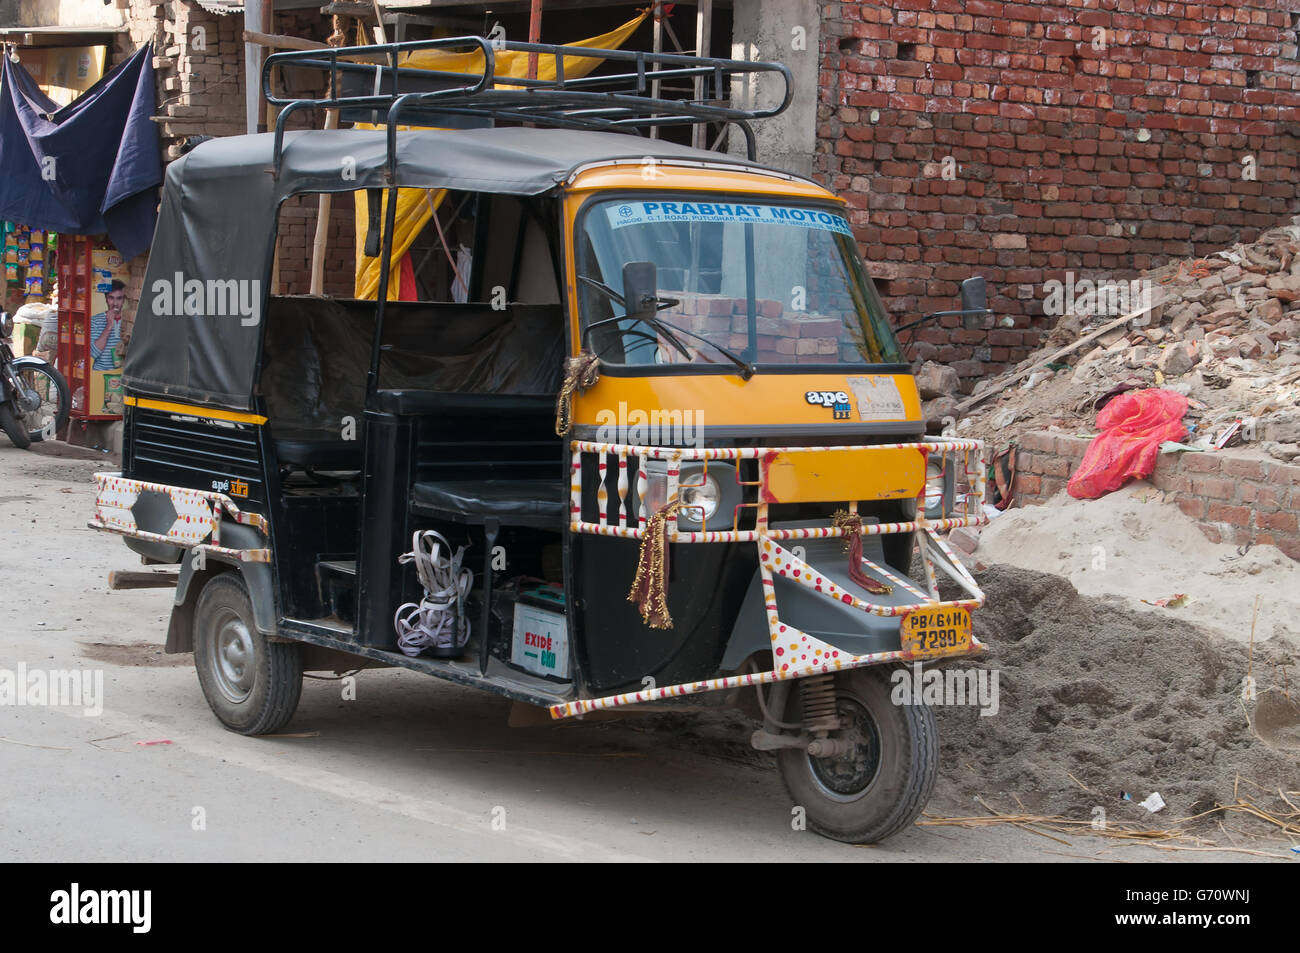 Auto rickshaw ou tuk-tuk dans la rue. Auto-pousse sont un moyen courant de transport public Banque D'Images